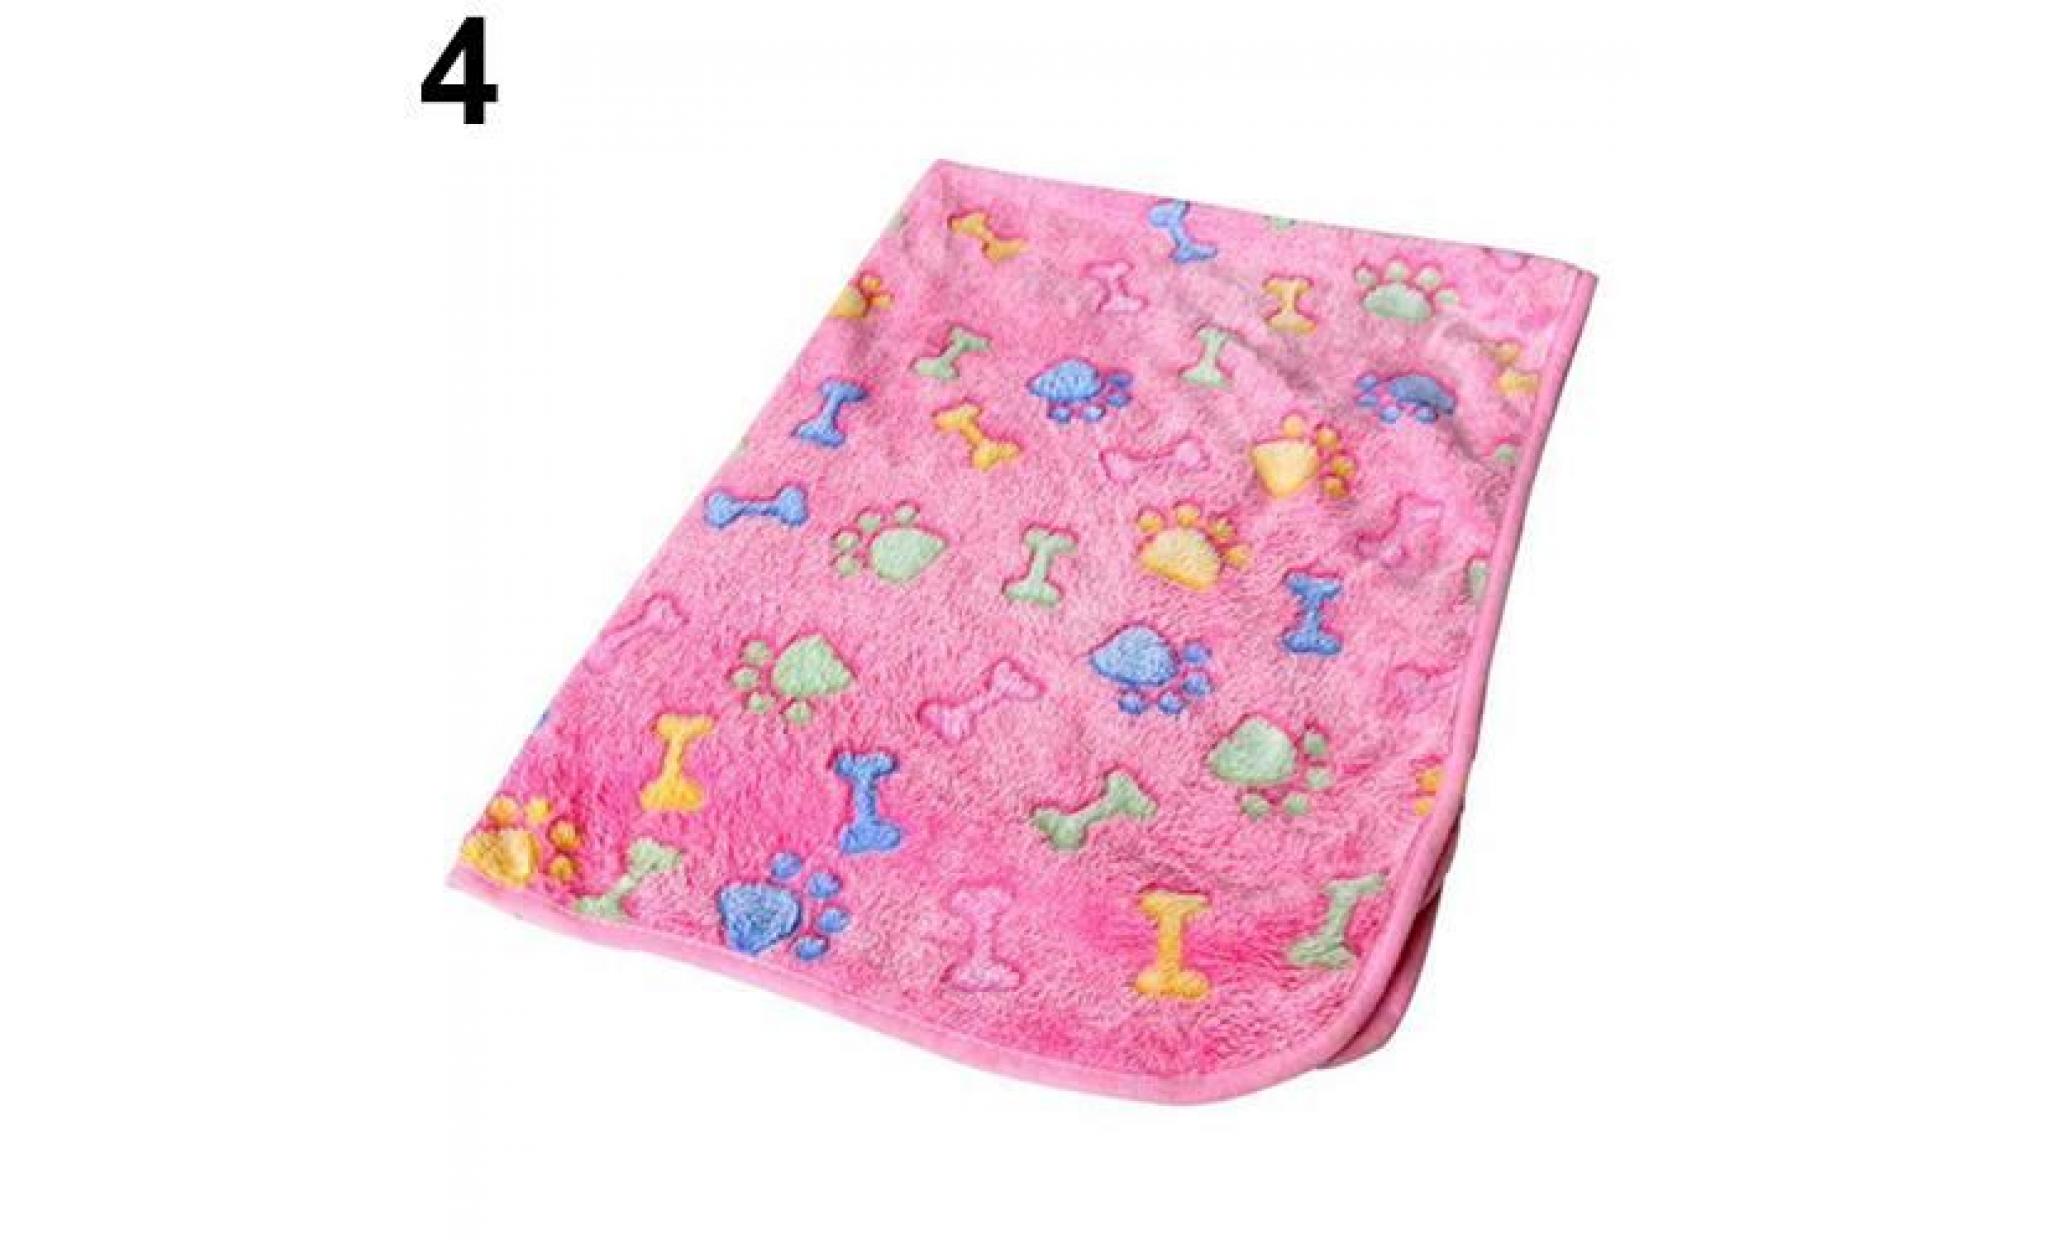 chaud tapis pour chien chat chien chiot patte imprimé doublure en molleton couverture coussin lit rose os 20 * 20cm